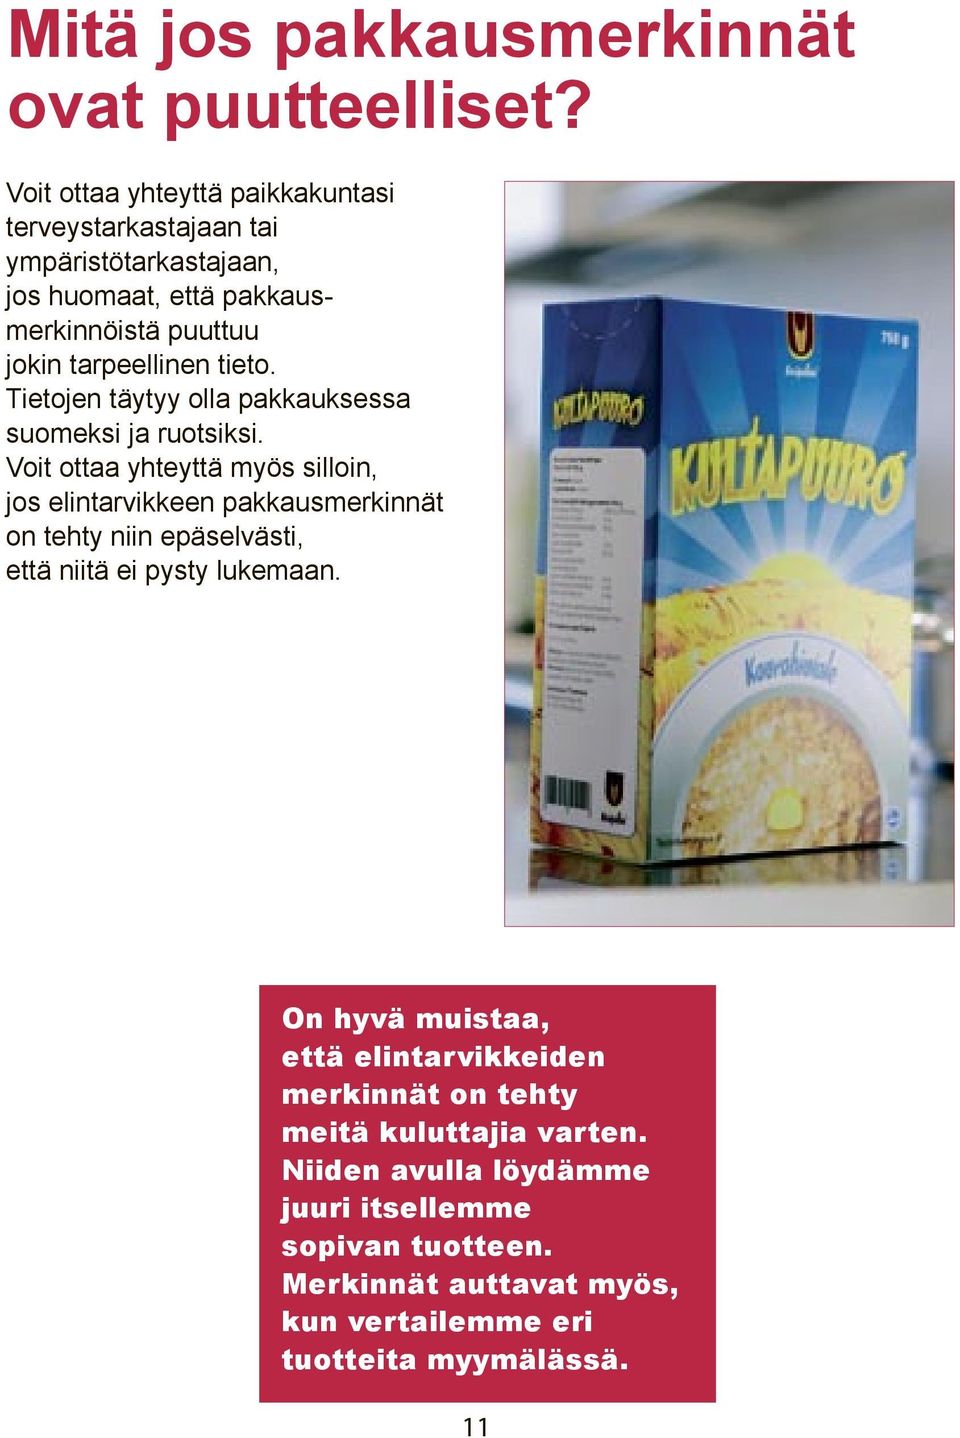 tieto. Tietojen täytyy olla pakkauksessa suomeksi ja ruotsiksi.